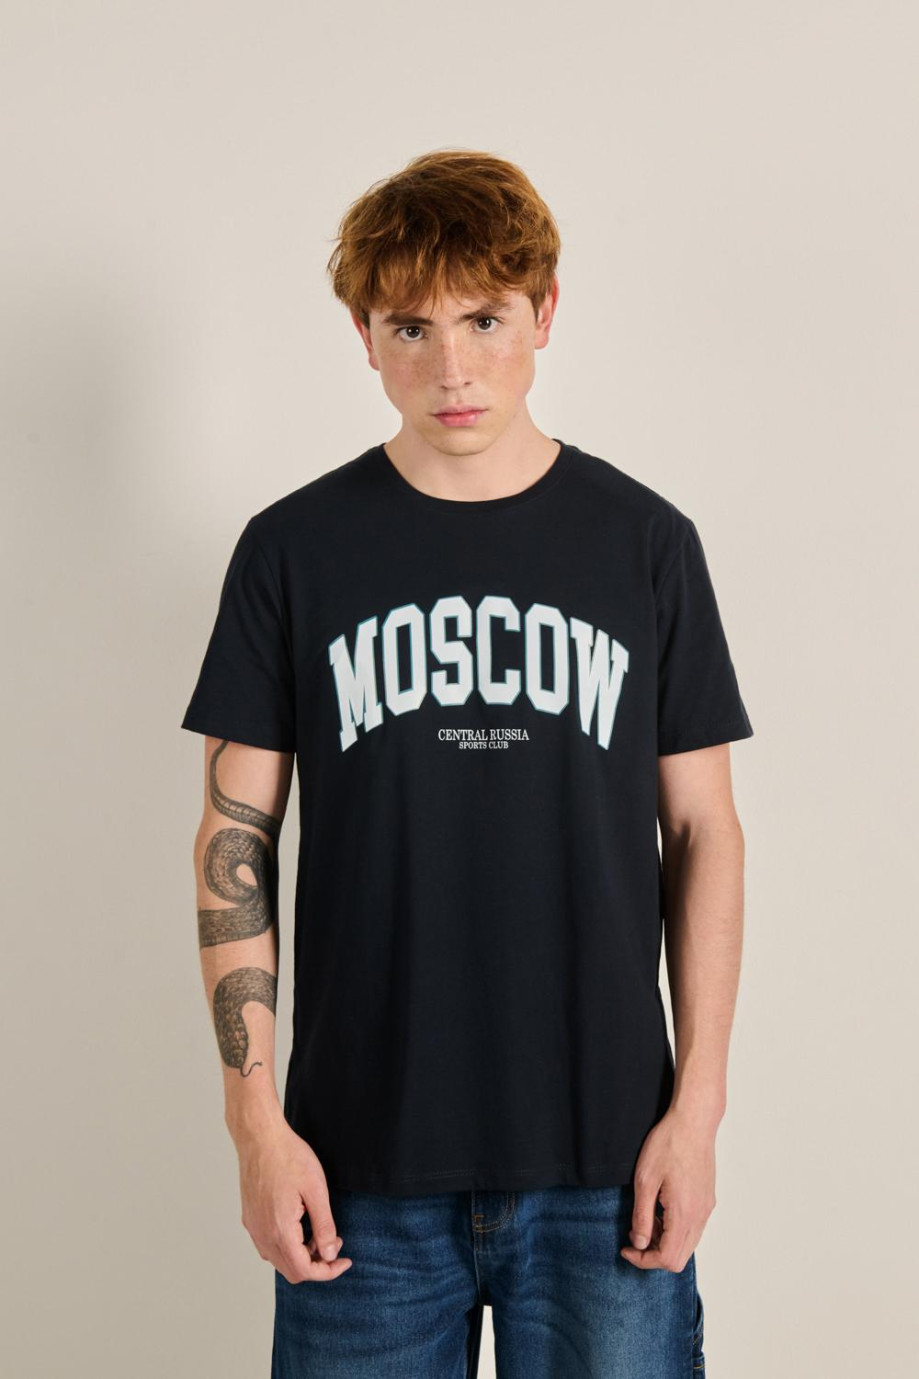 Camiseta unicolor con manga corta y diseño college de Moscow